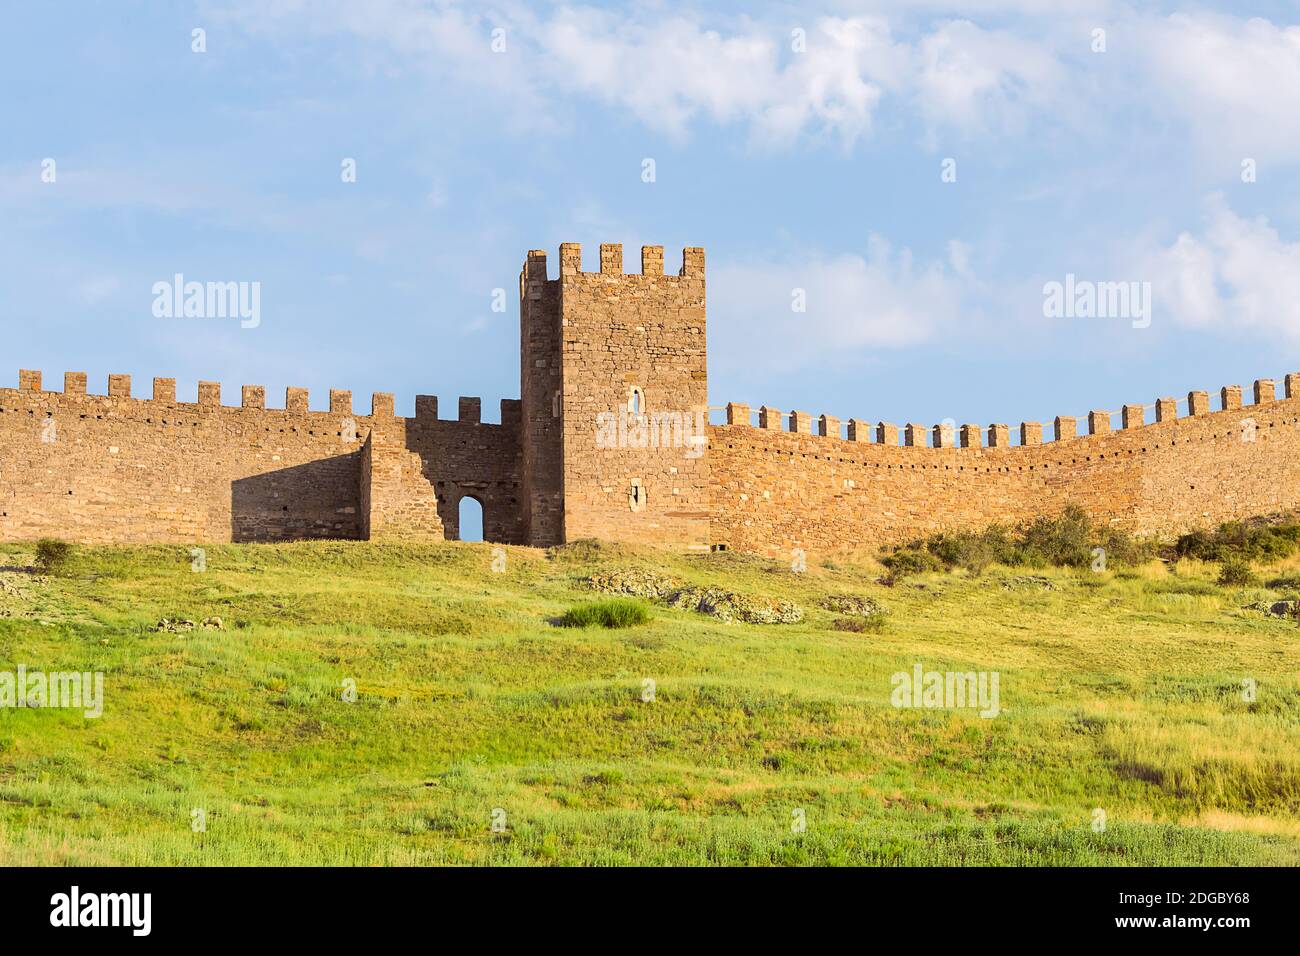 Krym Sudak forteresse génoise ruines de l'ancienne tour en pierre et une partie des bataillons sur une colline verte Banque D'Images